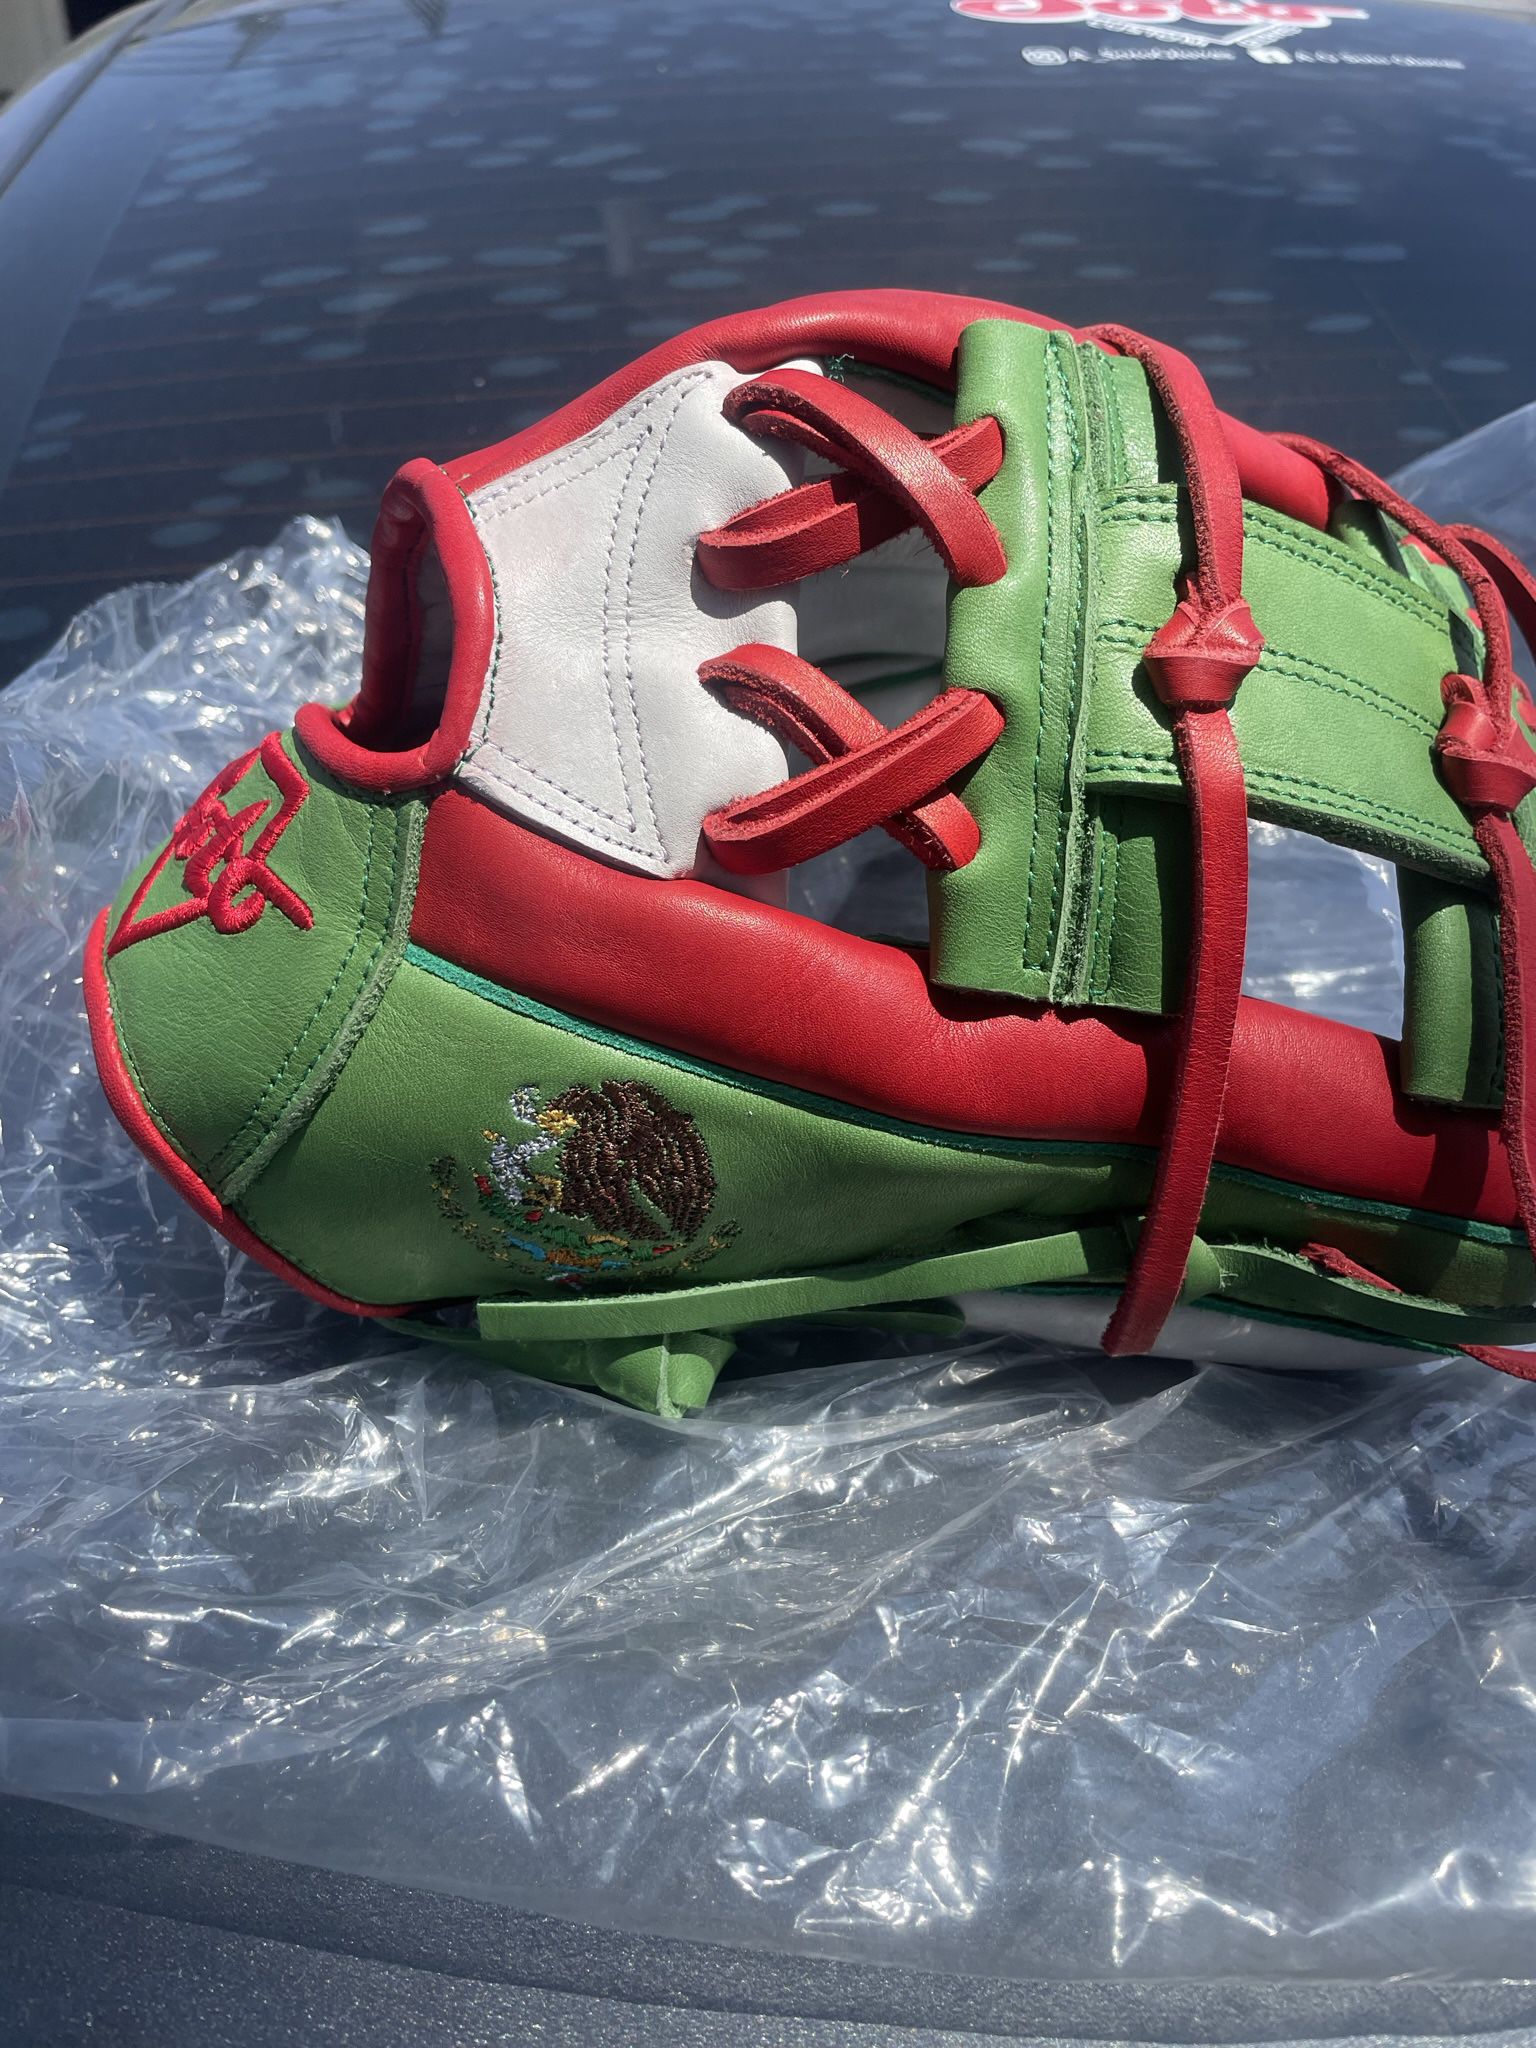 Mexico Edition Soto Glove 